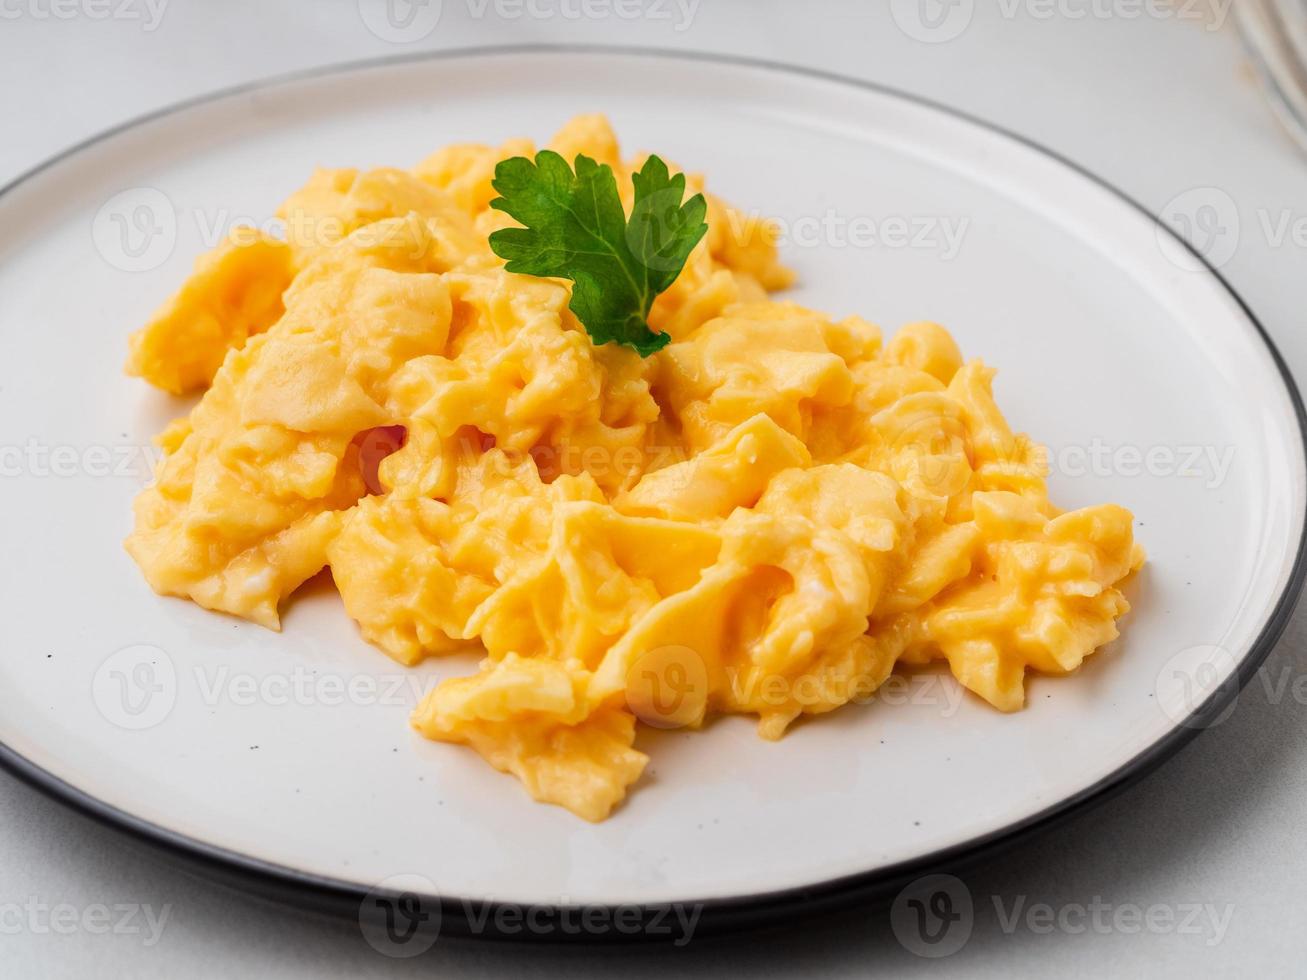 uova strapazzate, frittata. colazione con uova in padella foto